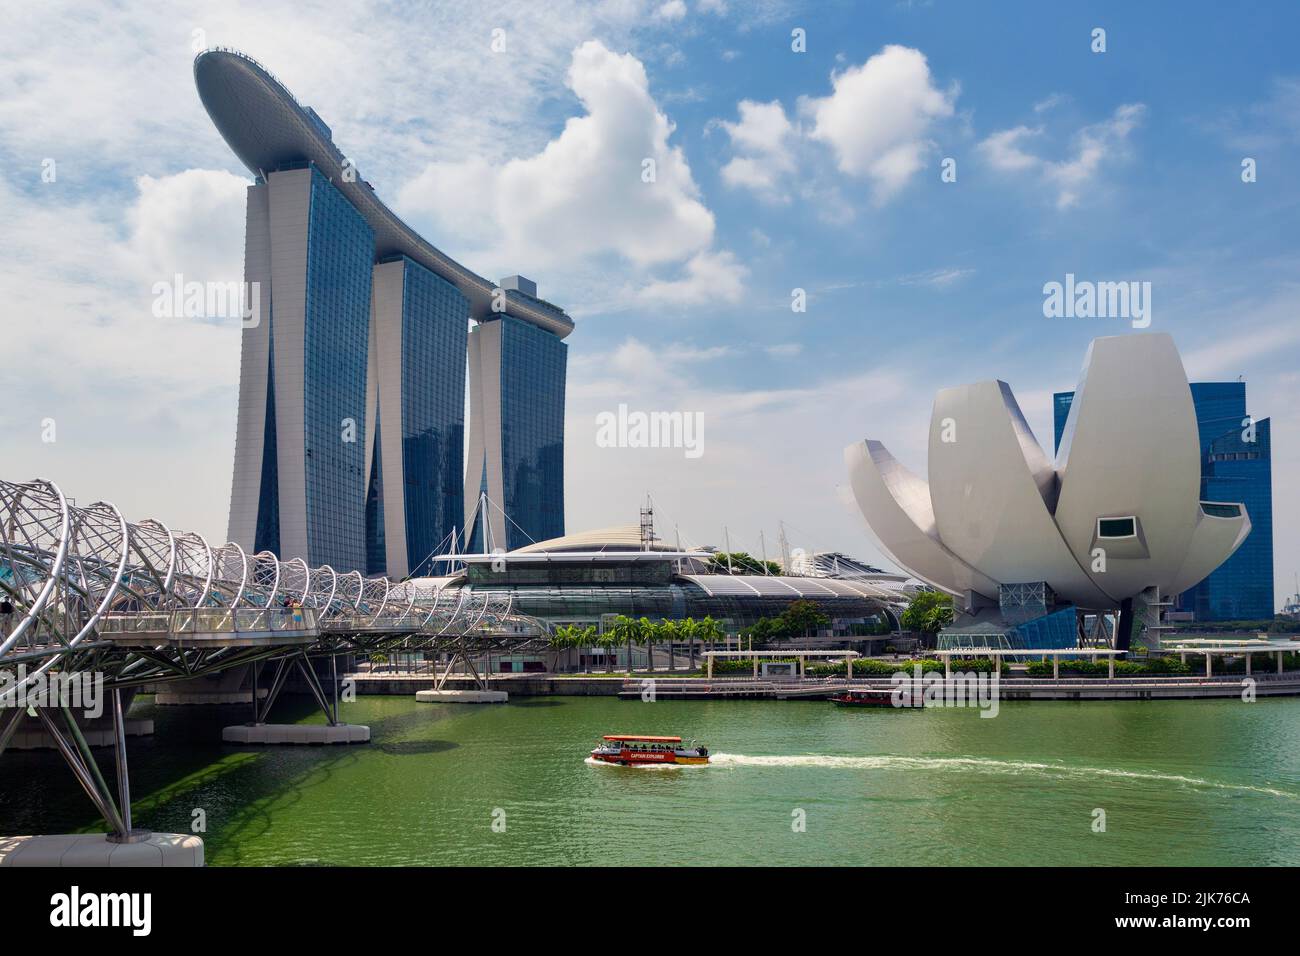 Le bâtiment Marina Bay Sands et (à droite) le musée ArtScience de la République de Singapour. Les deux bâtiments ont été conçus par l'architecte israélien Moshe S. Banque D'Images